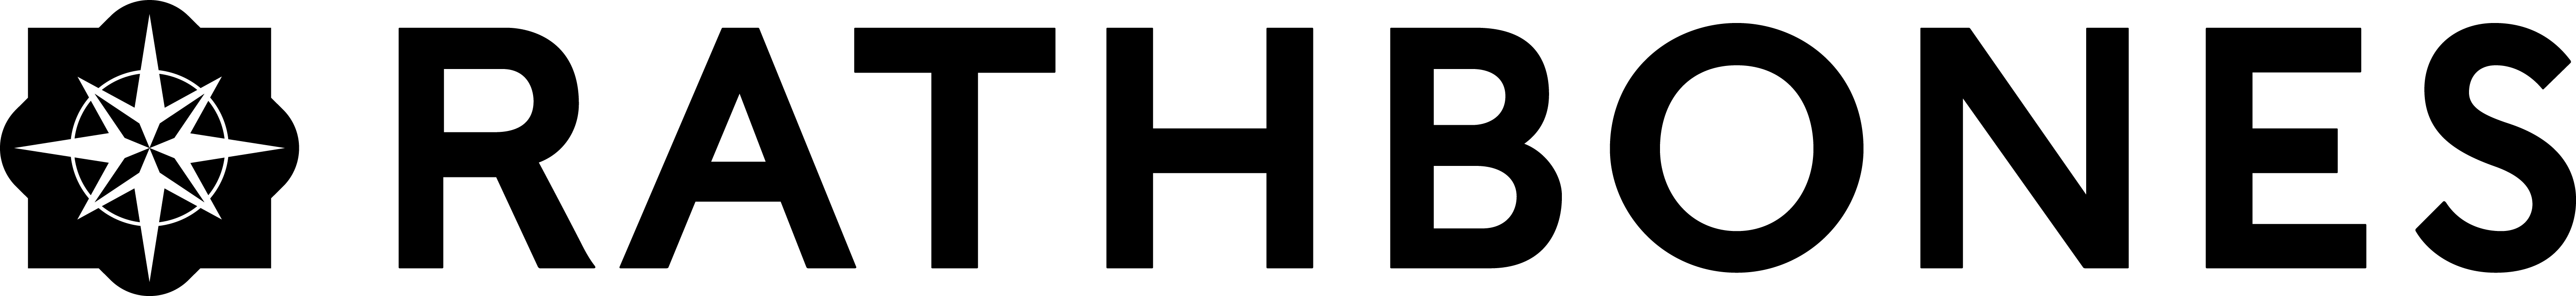 Rathbones Logo